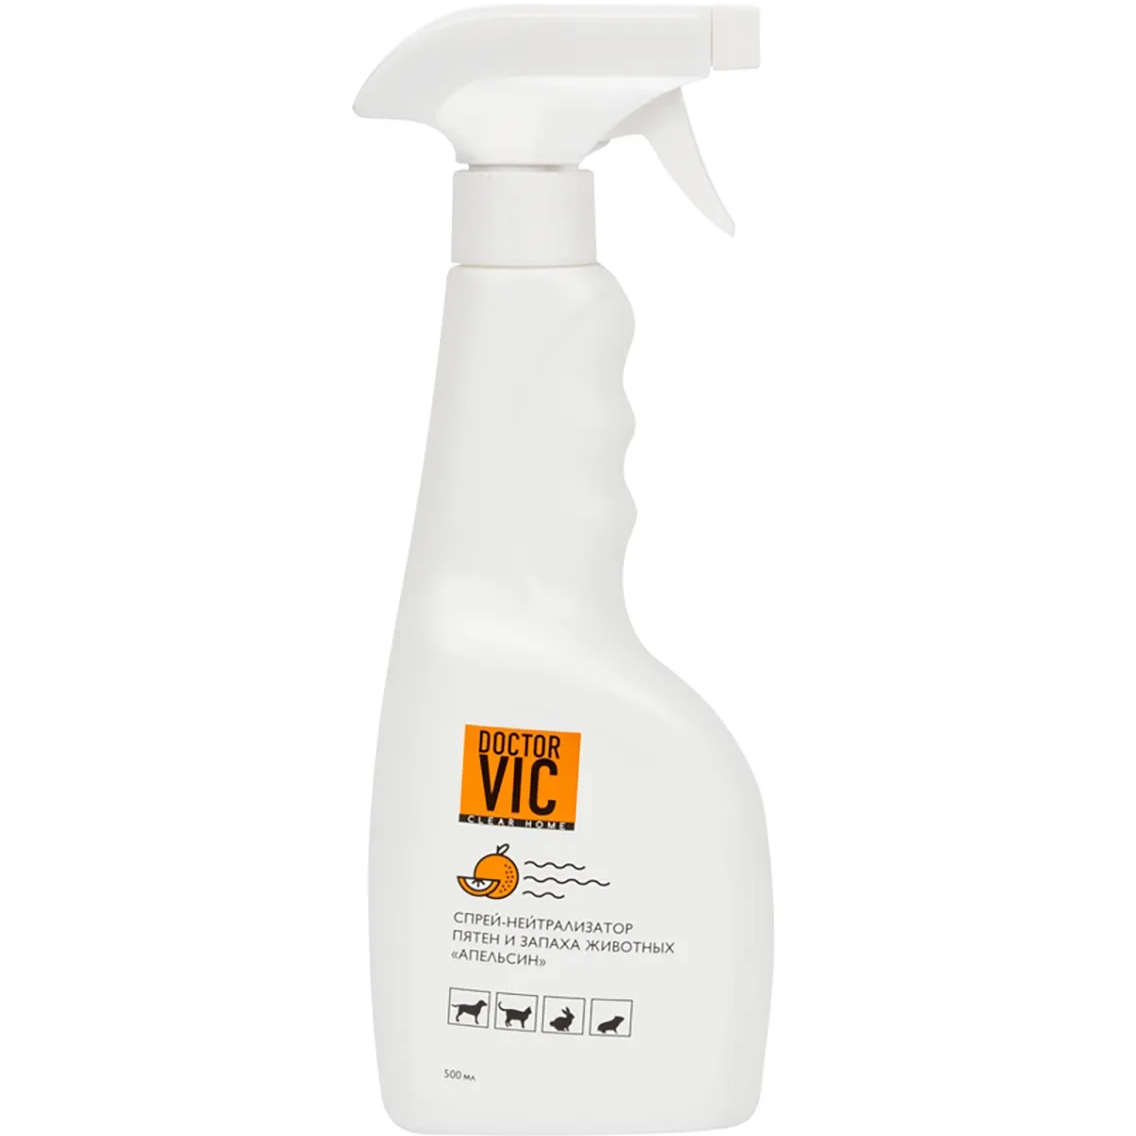 Спрей Doctor VIC для нейтрализации неприятных запахов и удаления пятен 500 мл апельсин - фото 1